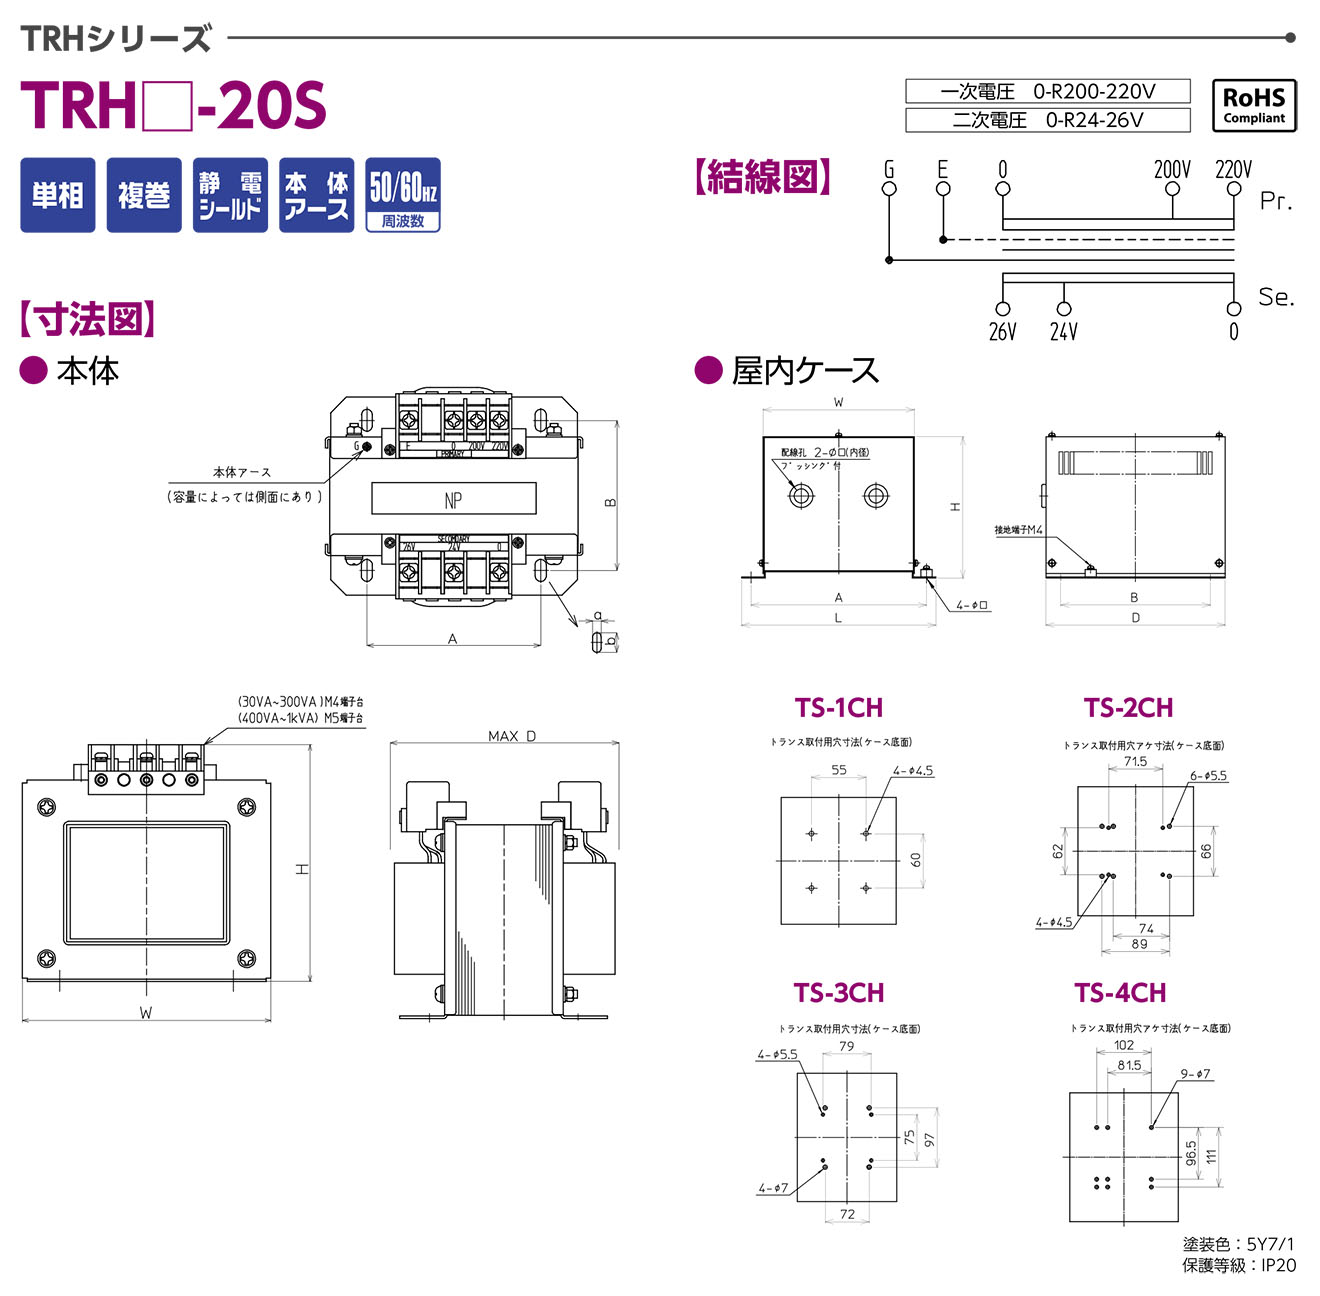 TRH-20S Biến áp 1 pha Togi 30VA~1kVA Vào 0-200-220VAC Ra 0-24-26VAC